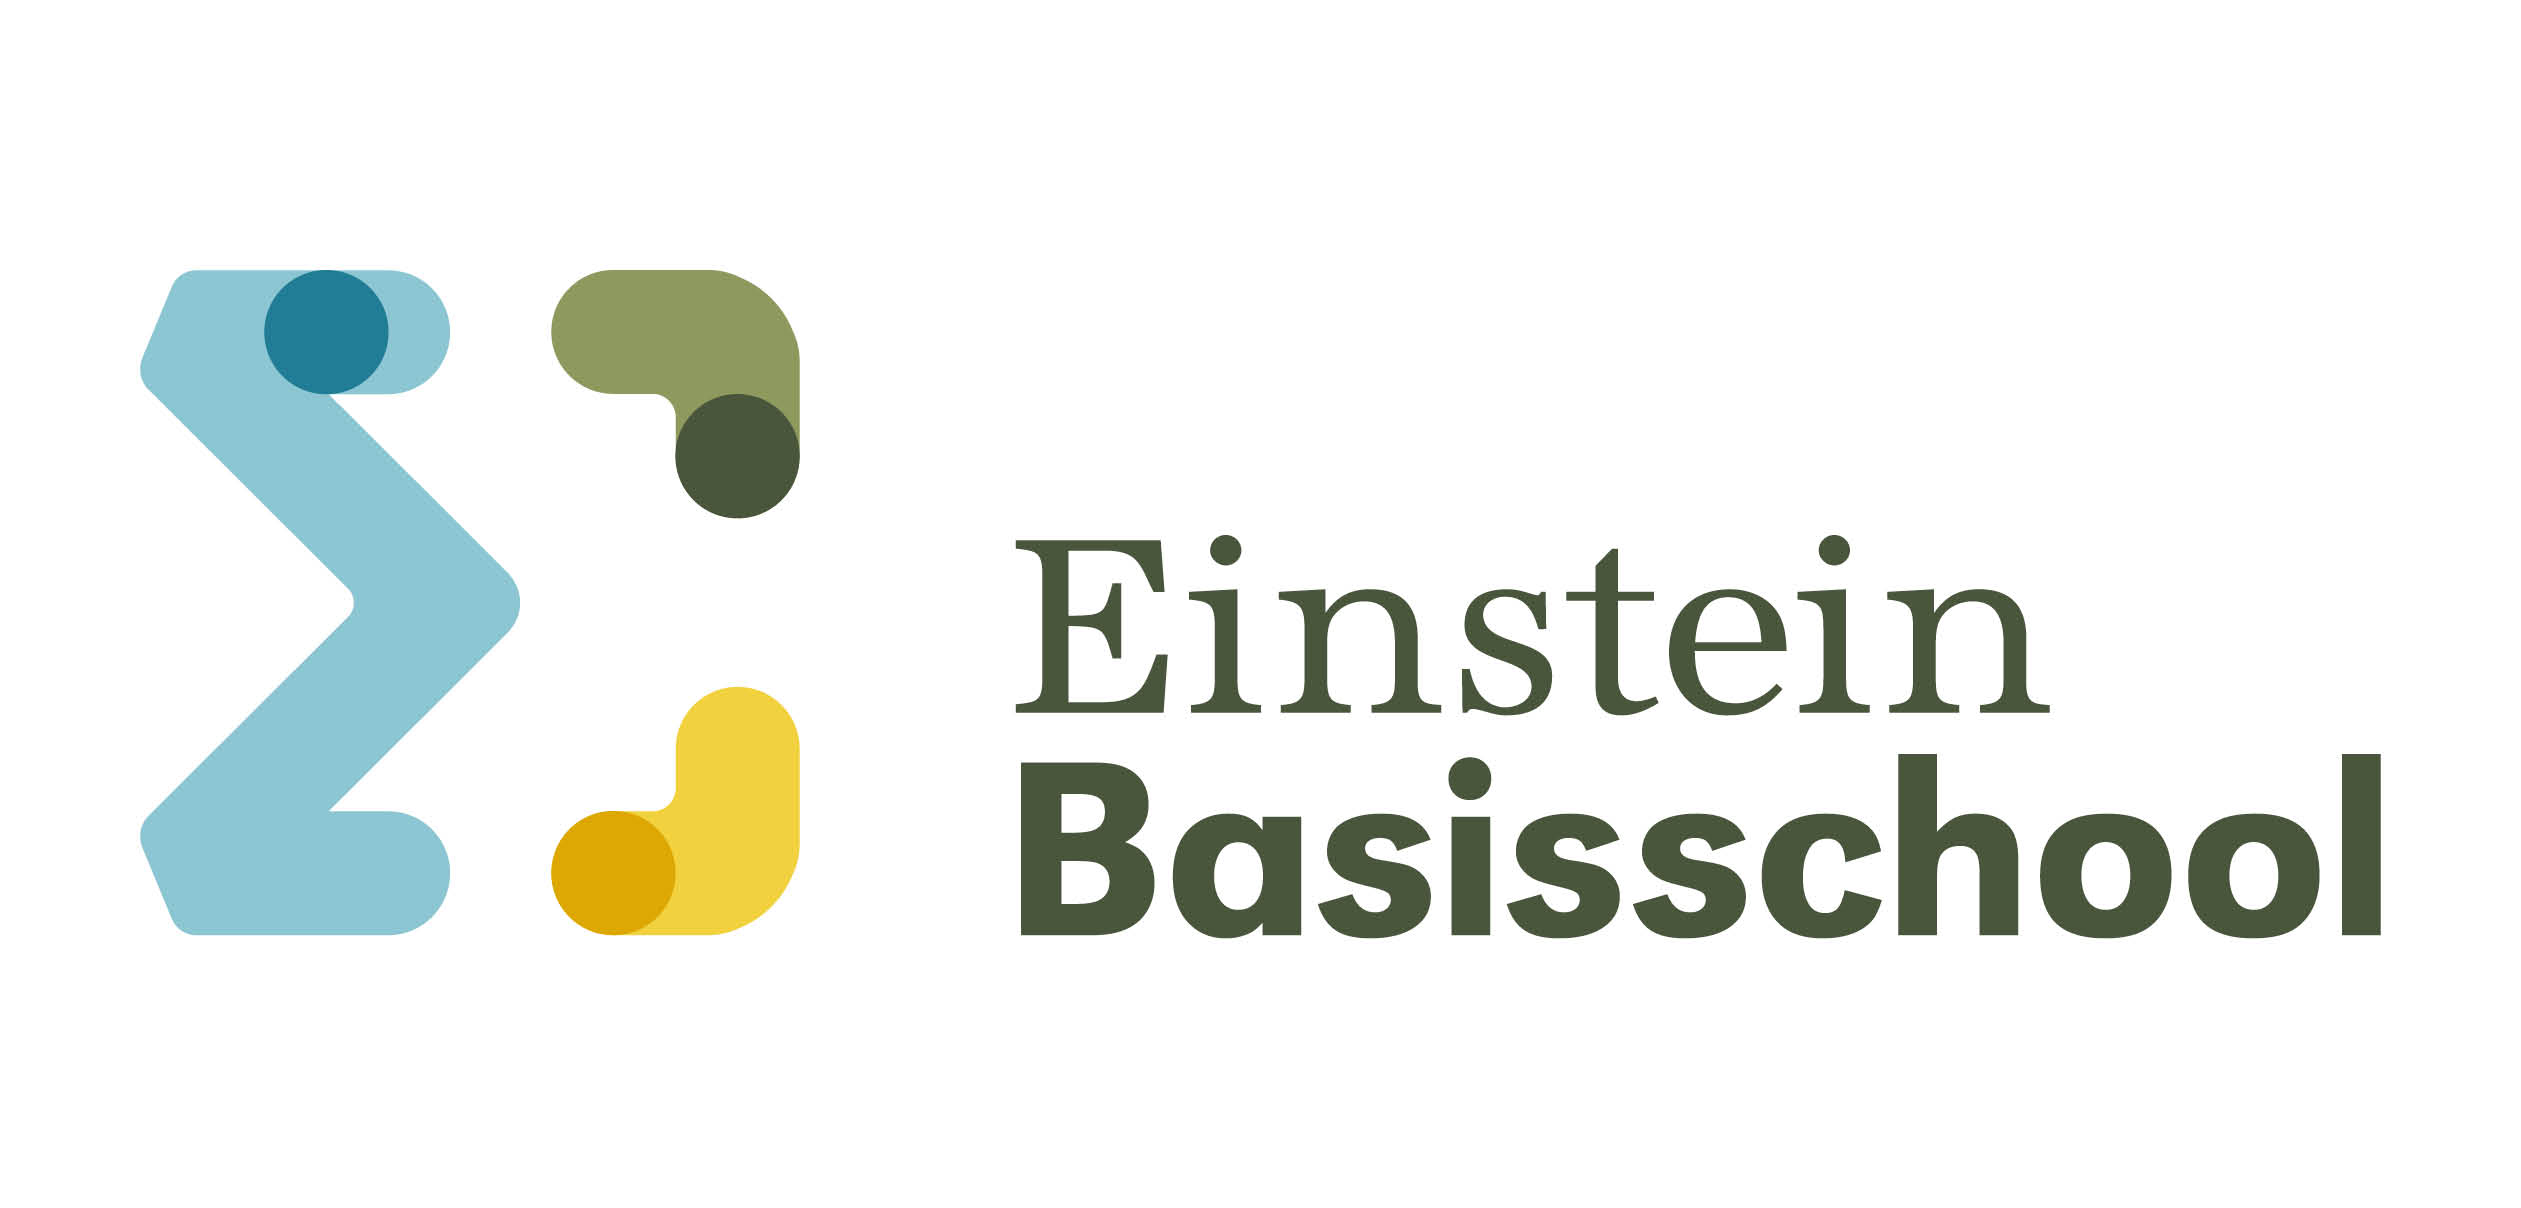 Basisschool Einstein